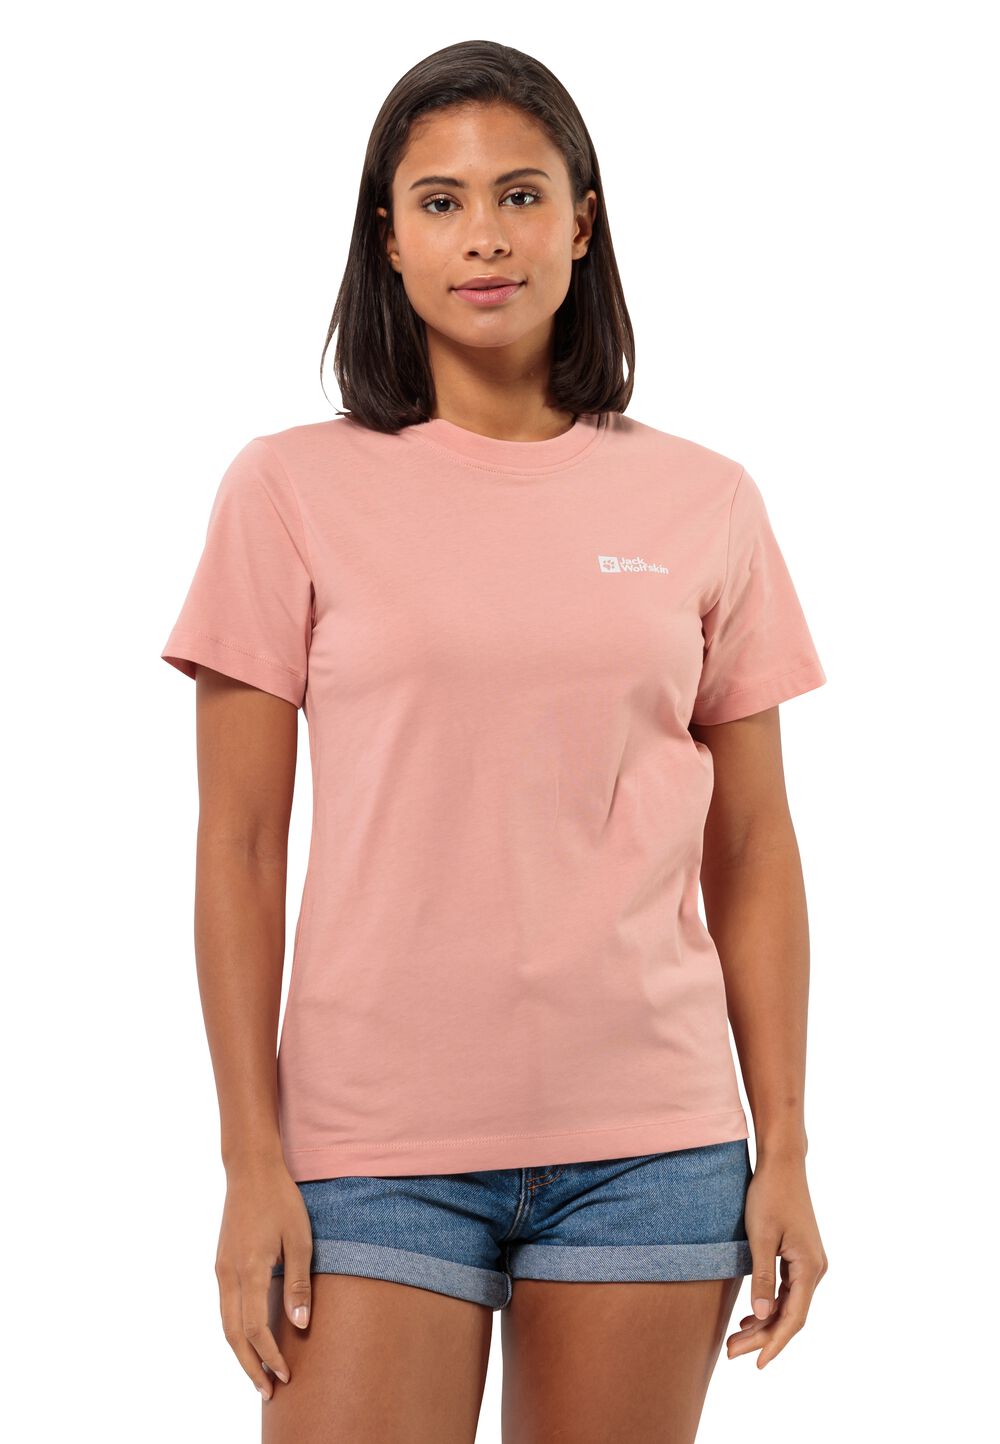 Jack Wolfskin Essential T-Shirt Women T-shirt van biologisch katoen Dames S bruin rose dawn